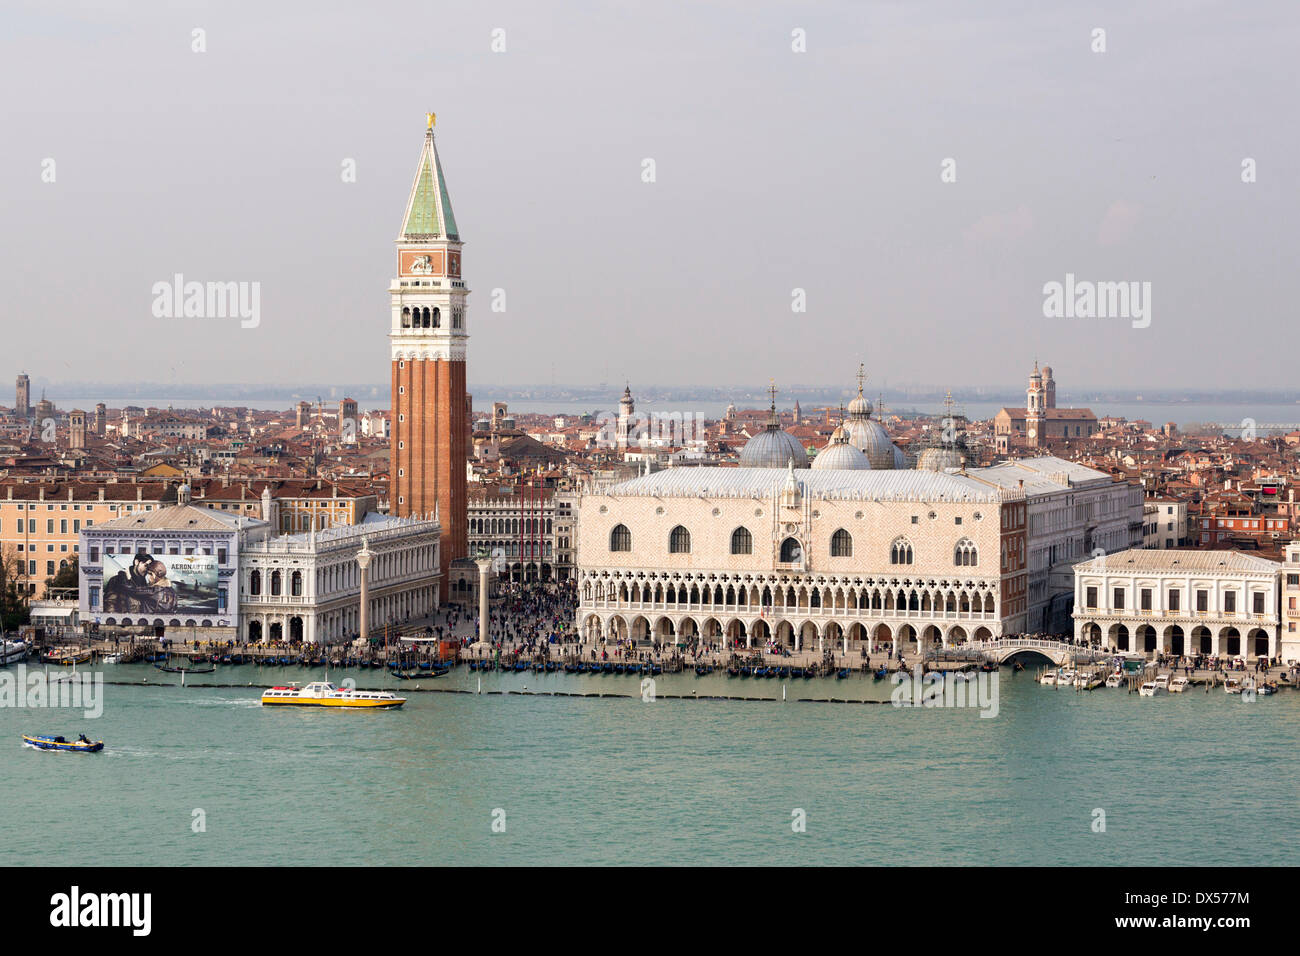 Paisaje urbano, la Plaza de San Marcos, el Palacio Ducal y el Campanile, Venecia, Véneto, Italia Foto de stock